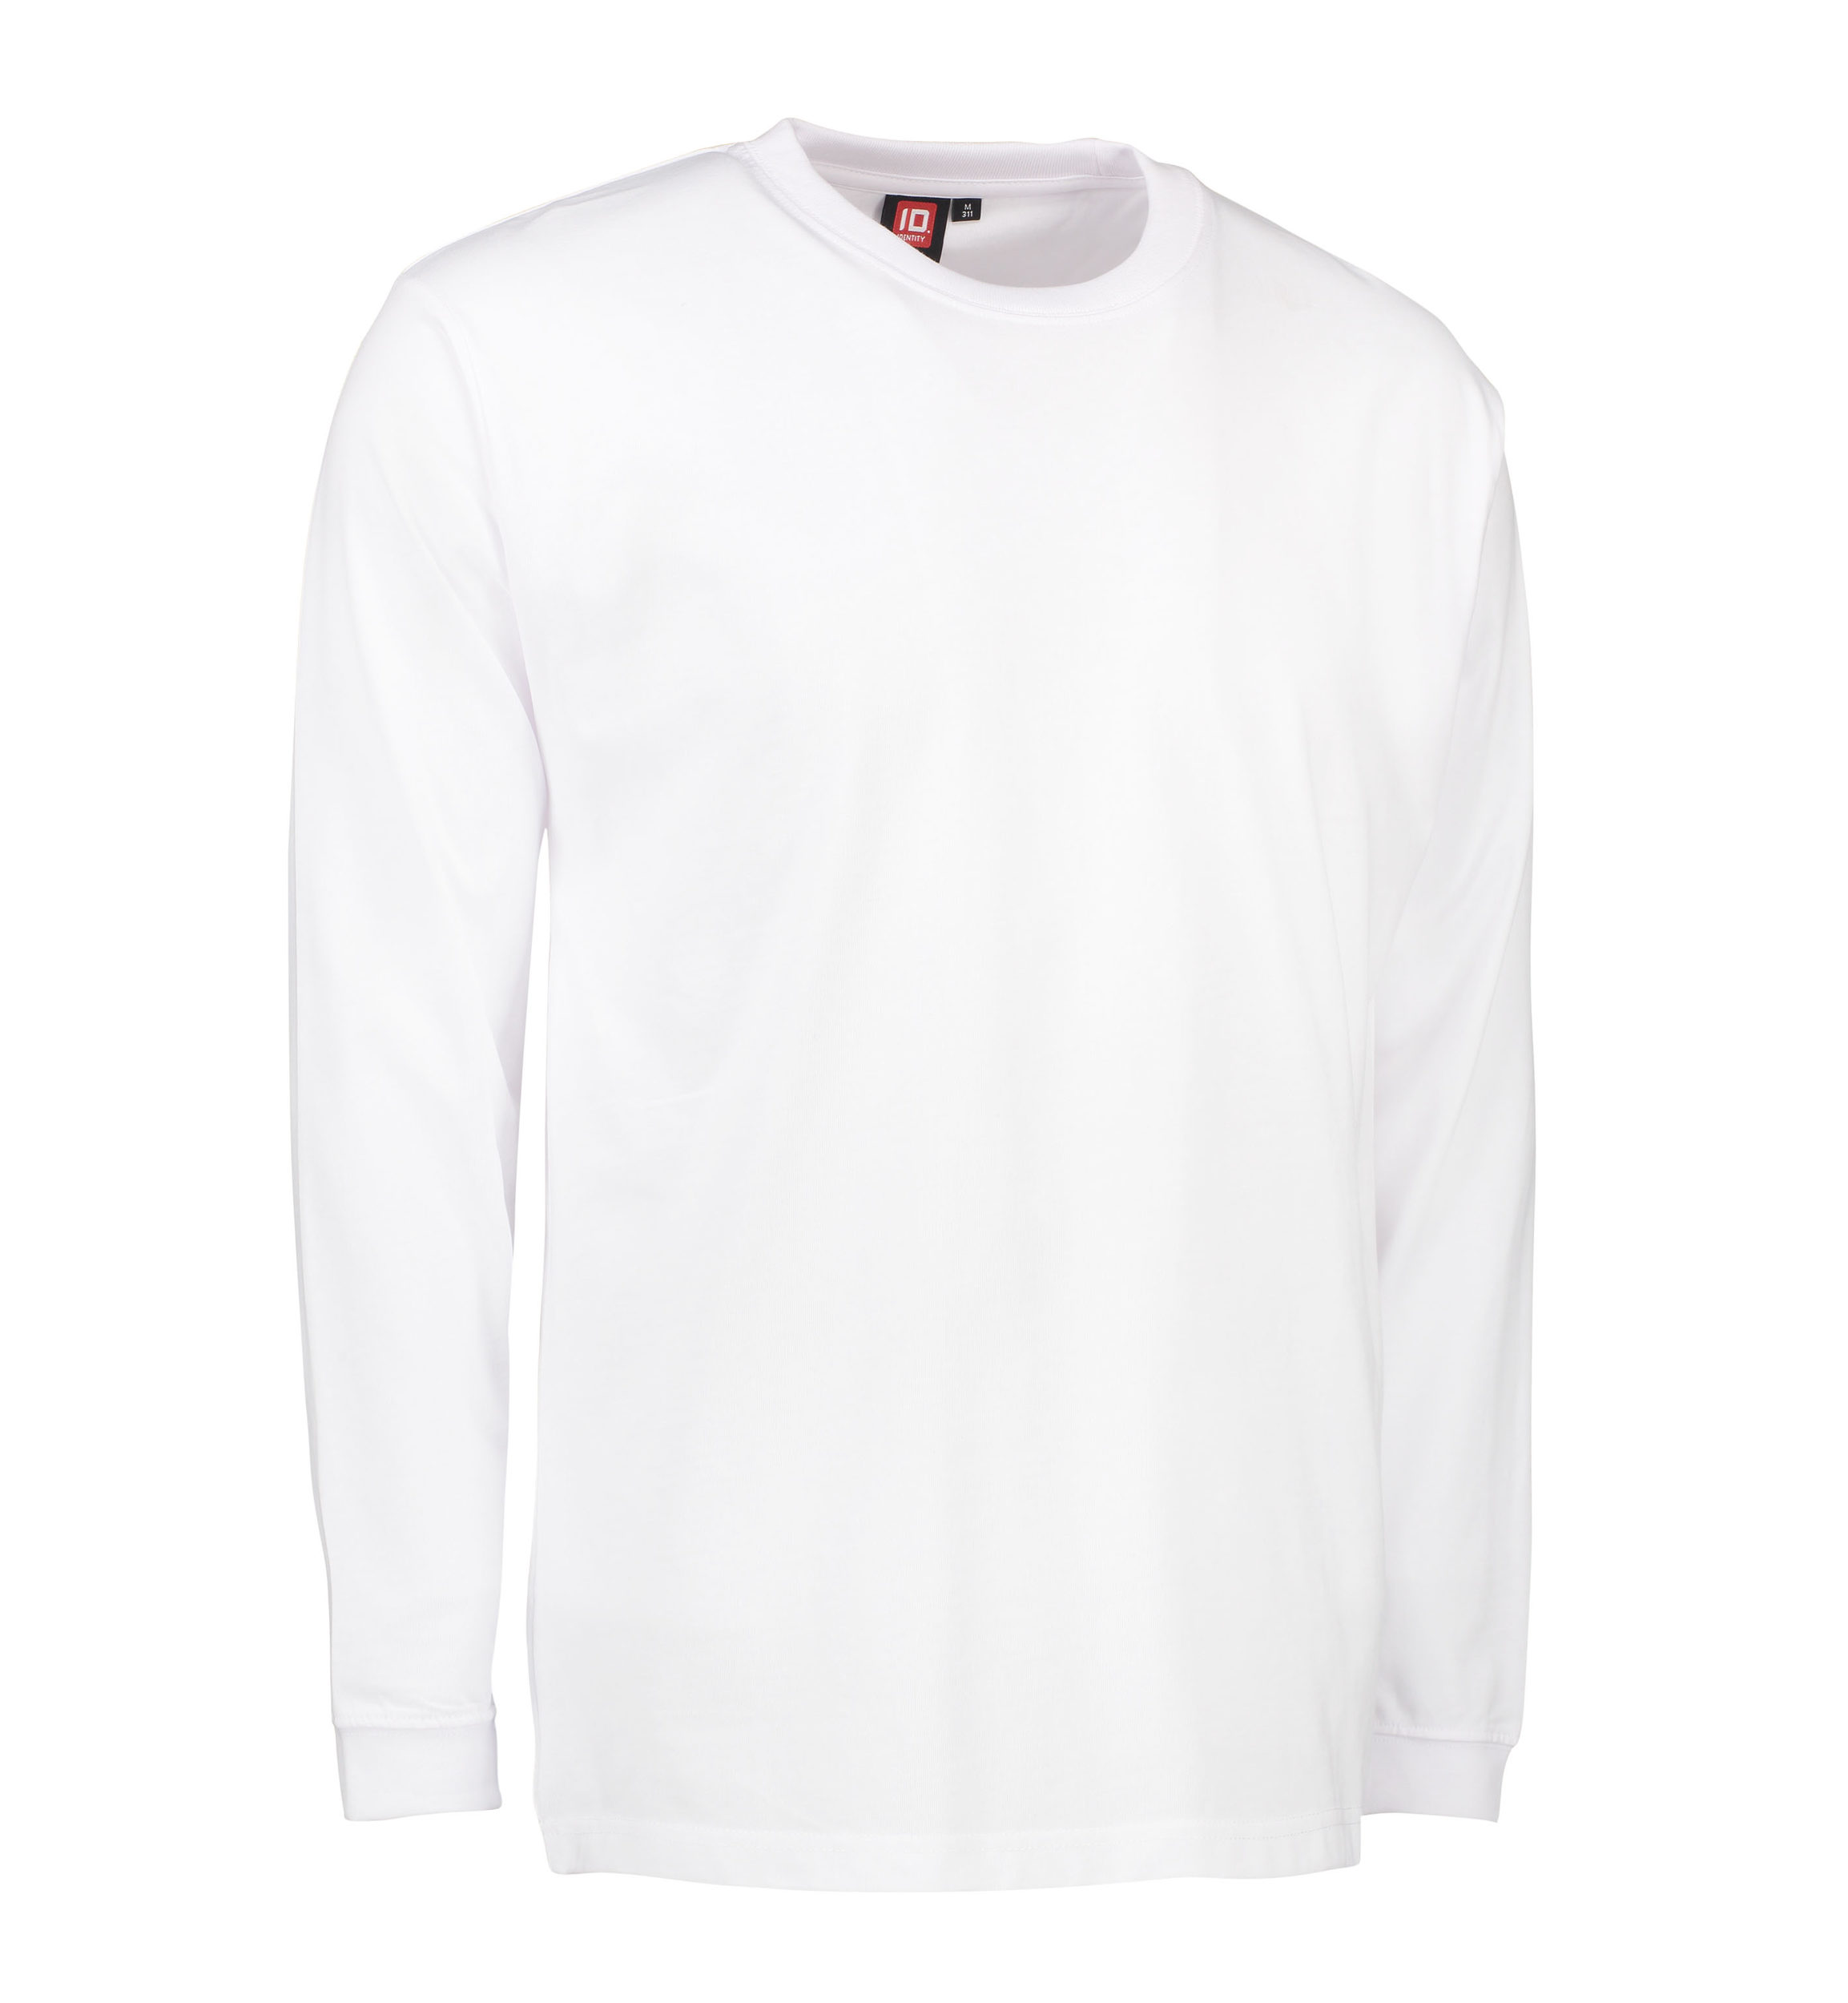 Billede af Slidstærk langærmet t-shirt til mænd i hvid - L hos Sygeplejebutikken.dk